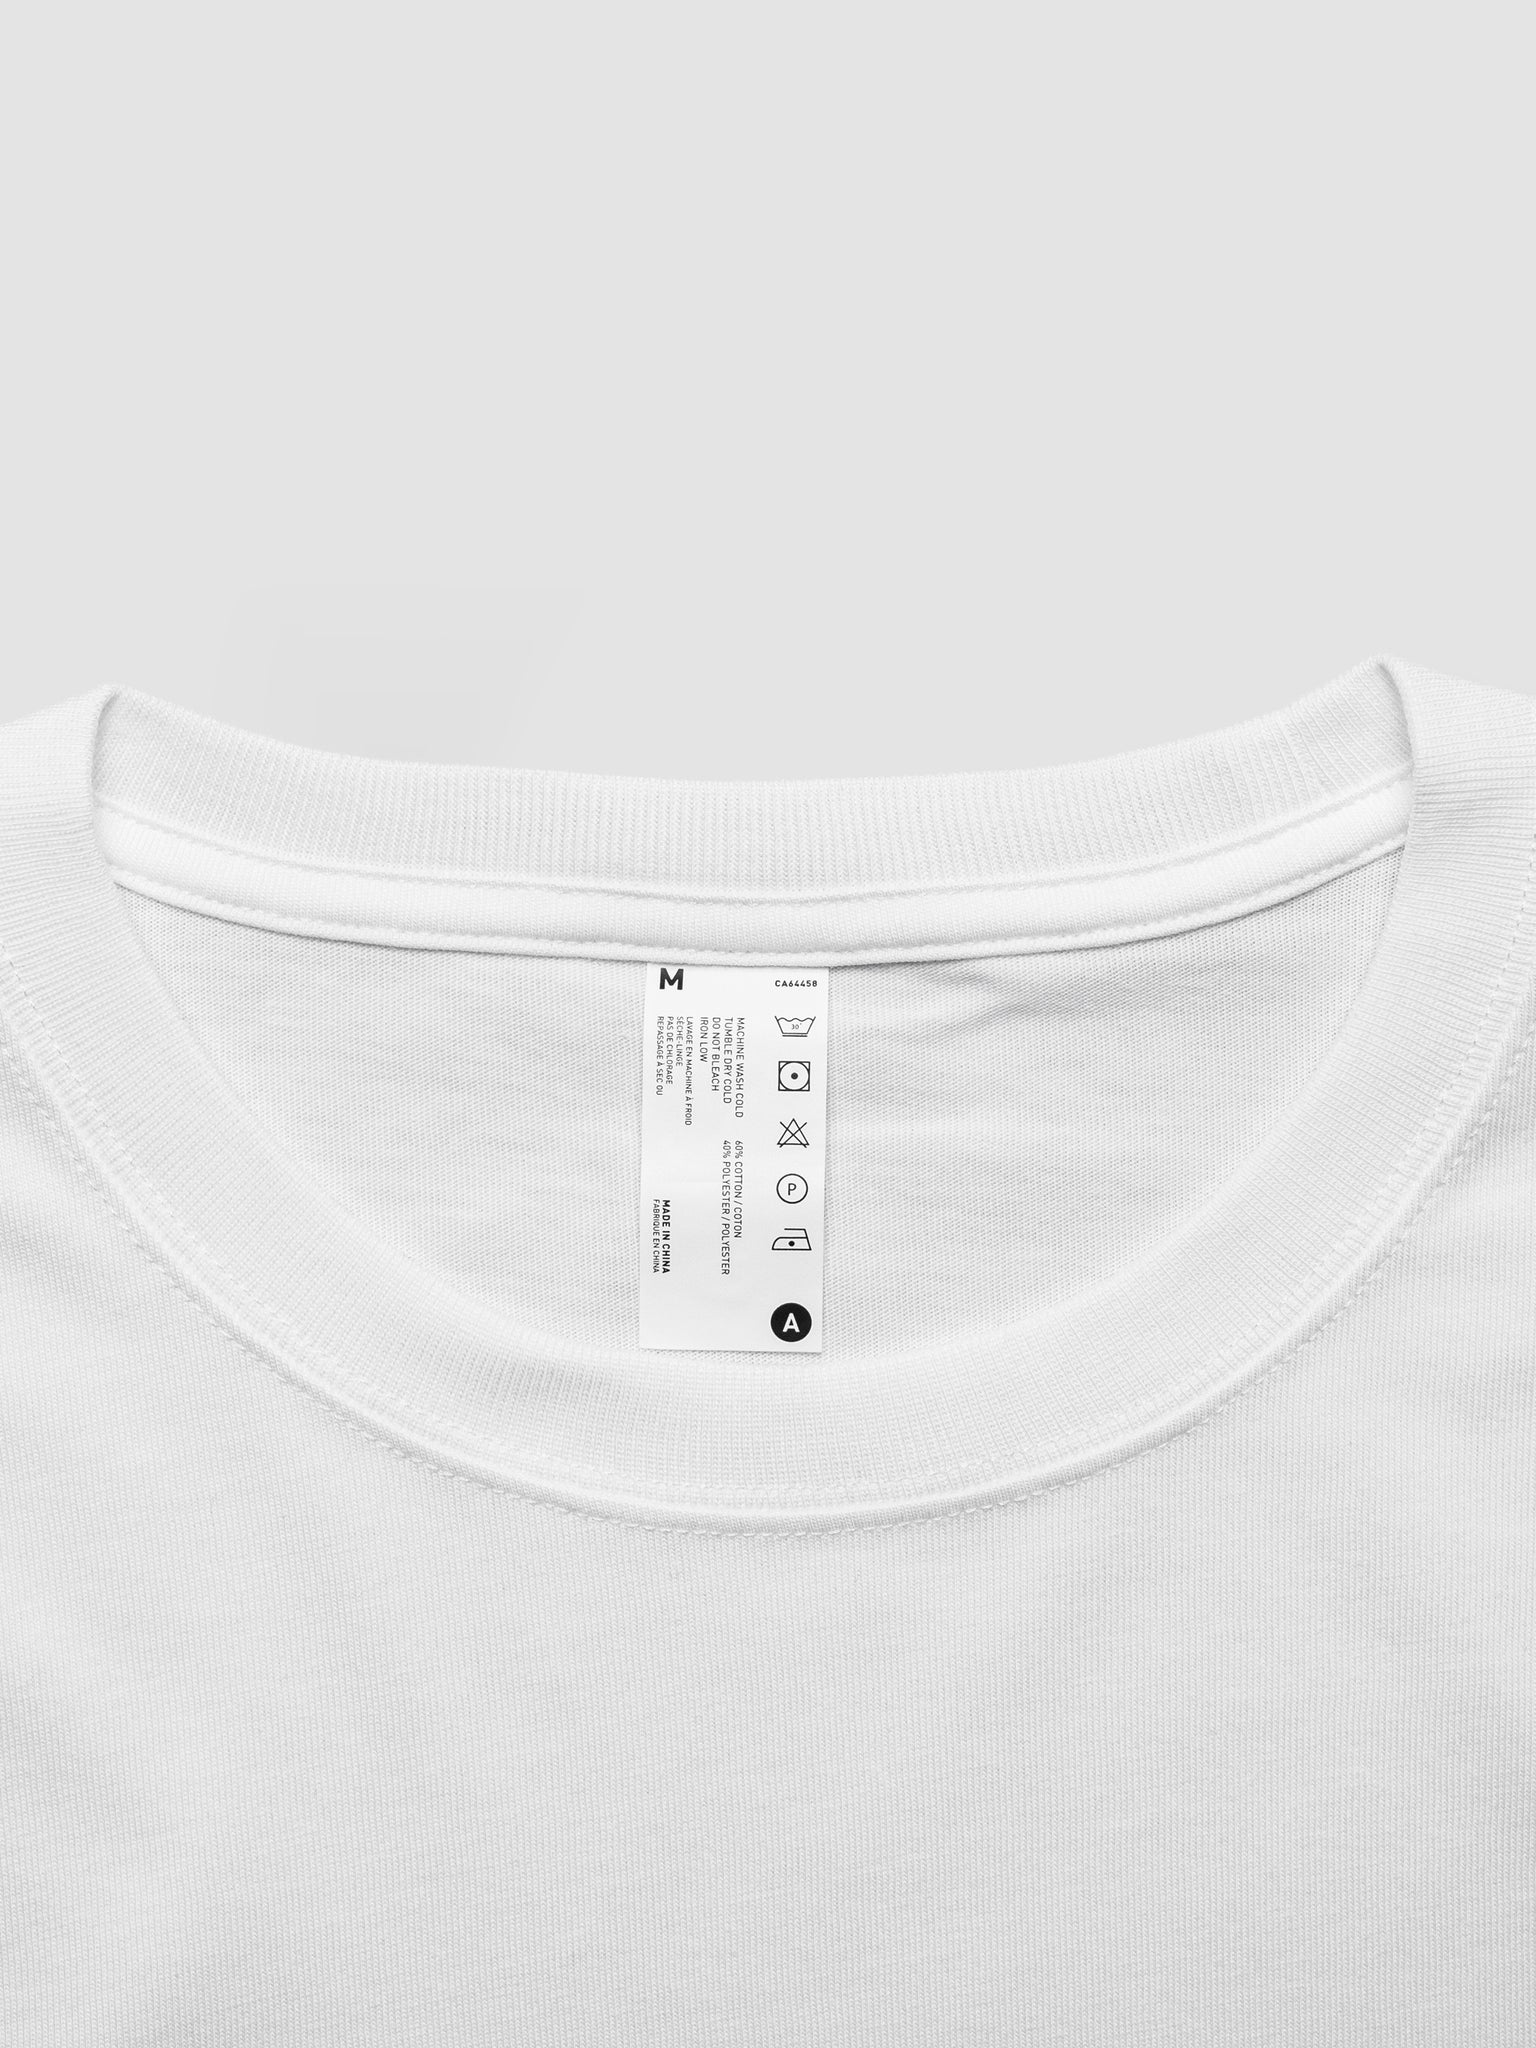 BLANK - Standard Fit T-Shirt White - v2